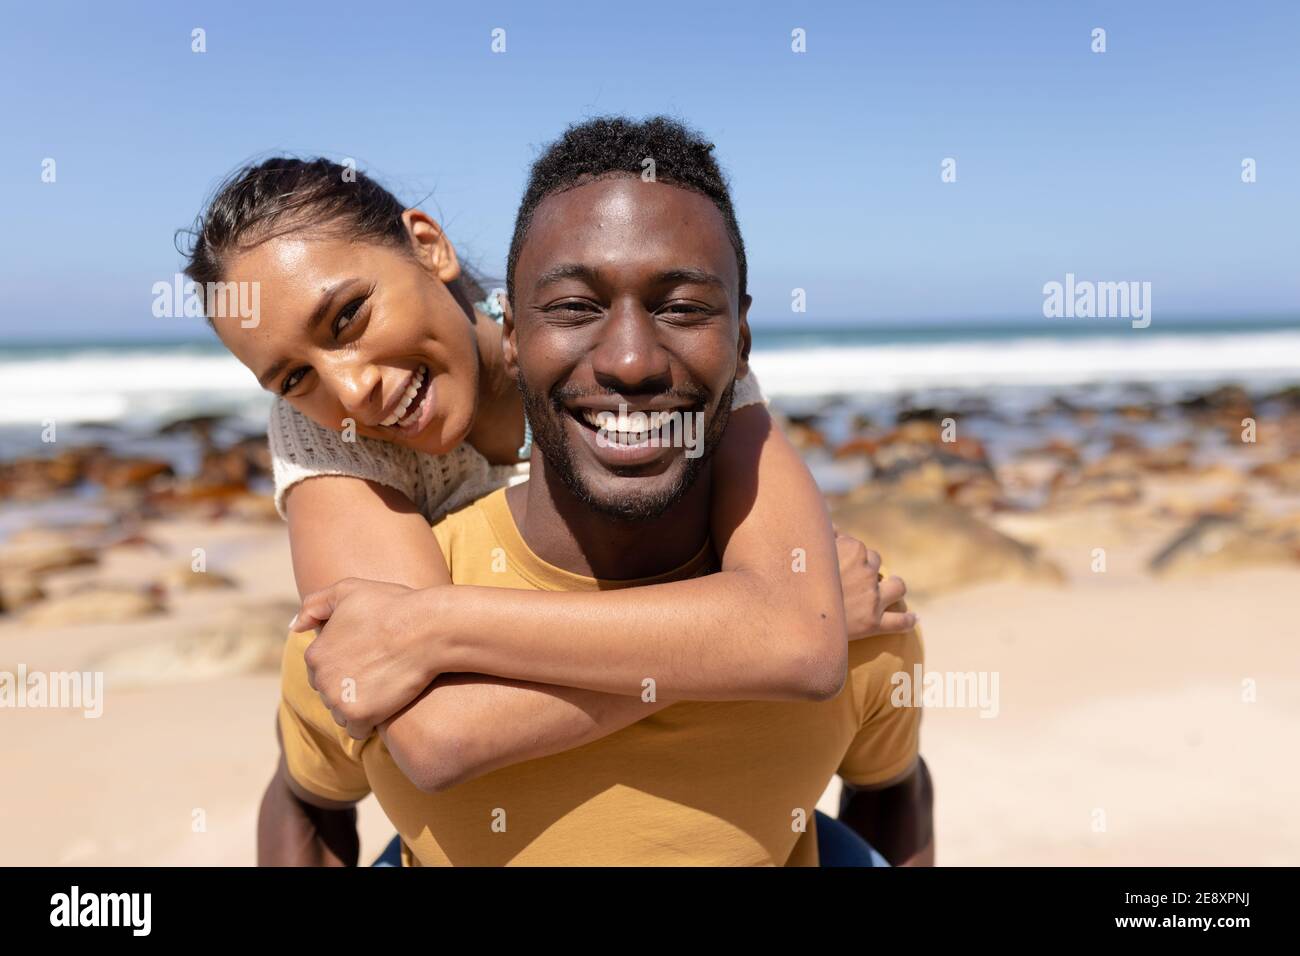 Portrait D Un Couple Afro Américain Qui S Embrasse Sur Une Plage La Mer Photo Stock Alamy